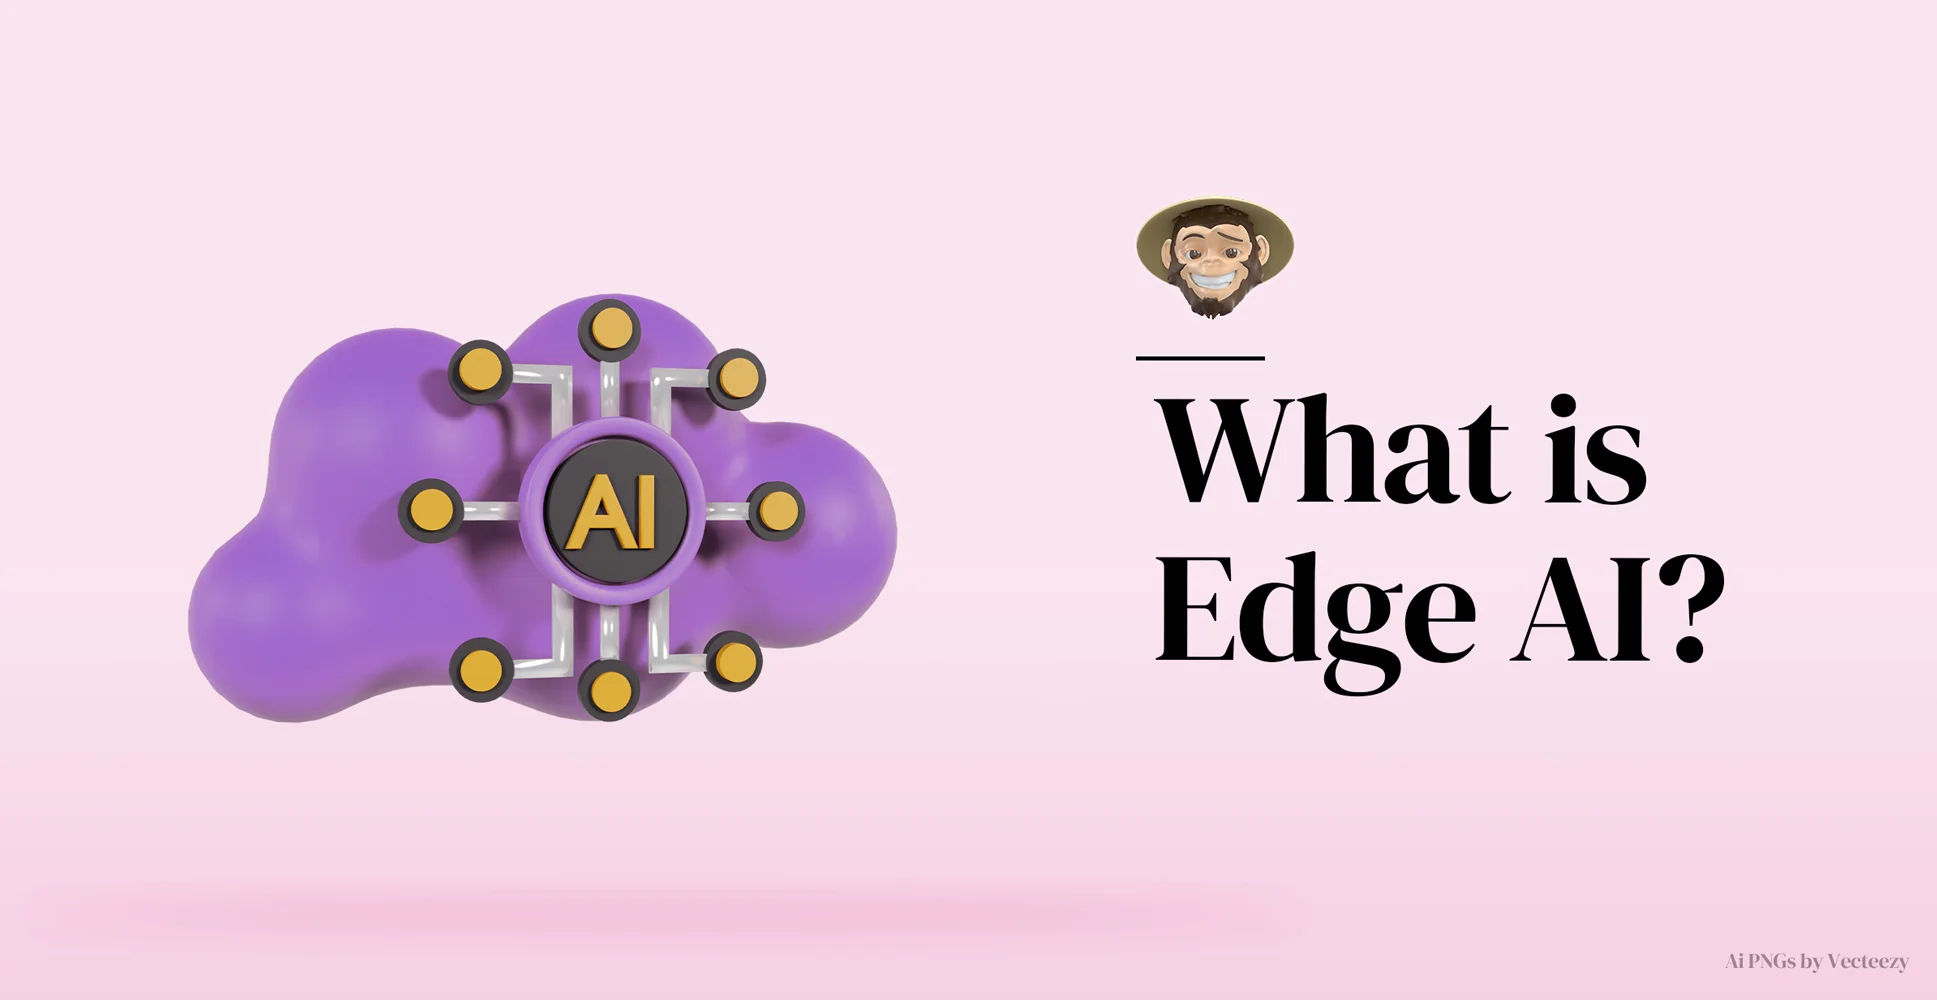 ¿Qué es Edge IA?